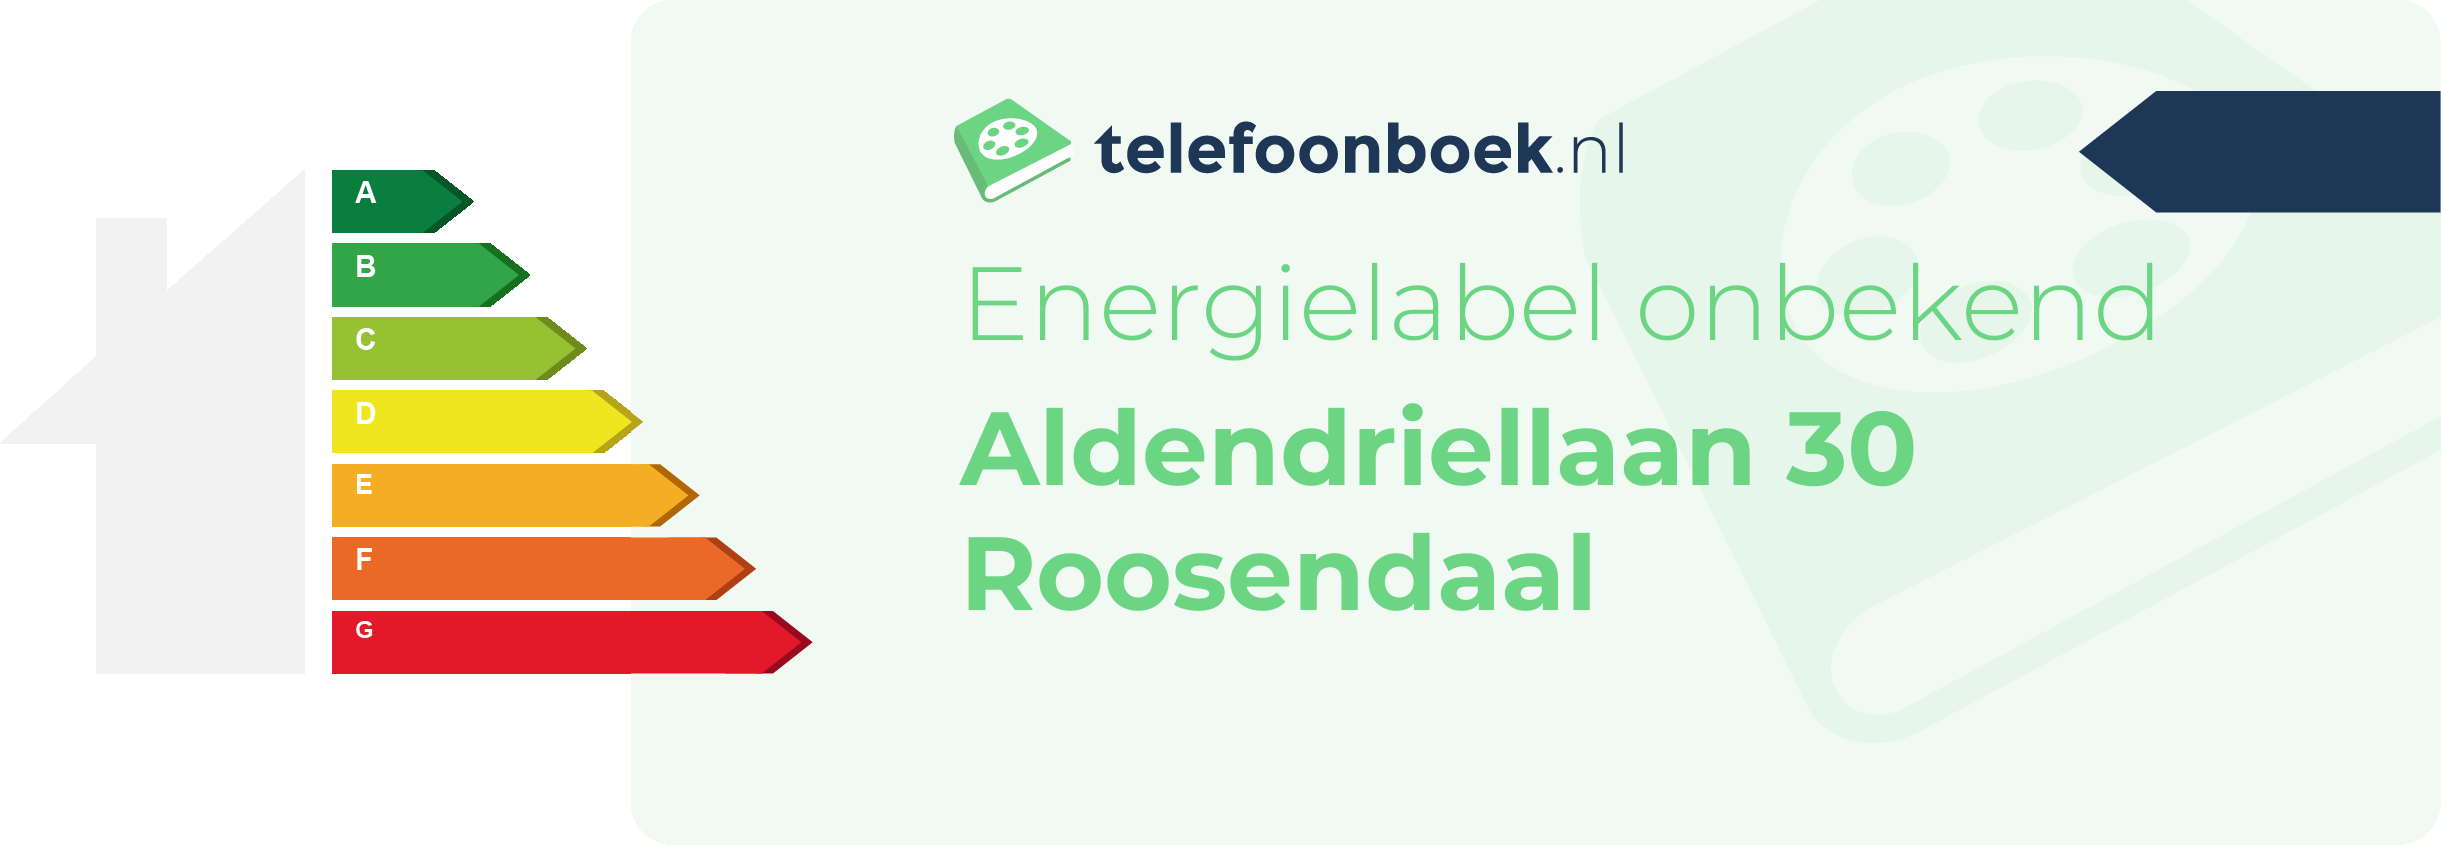 Energielabel Aldendriellaan 30 Roosendaal